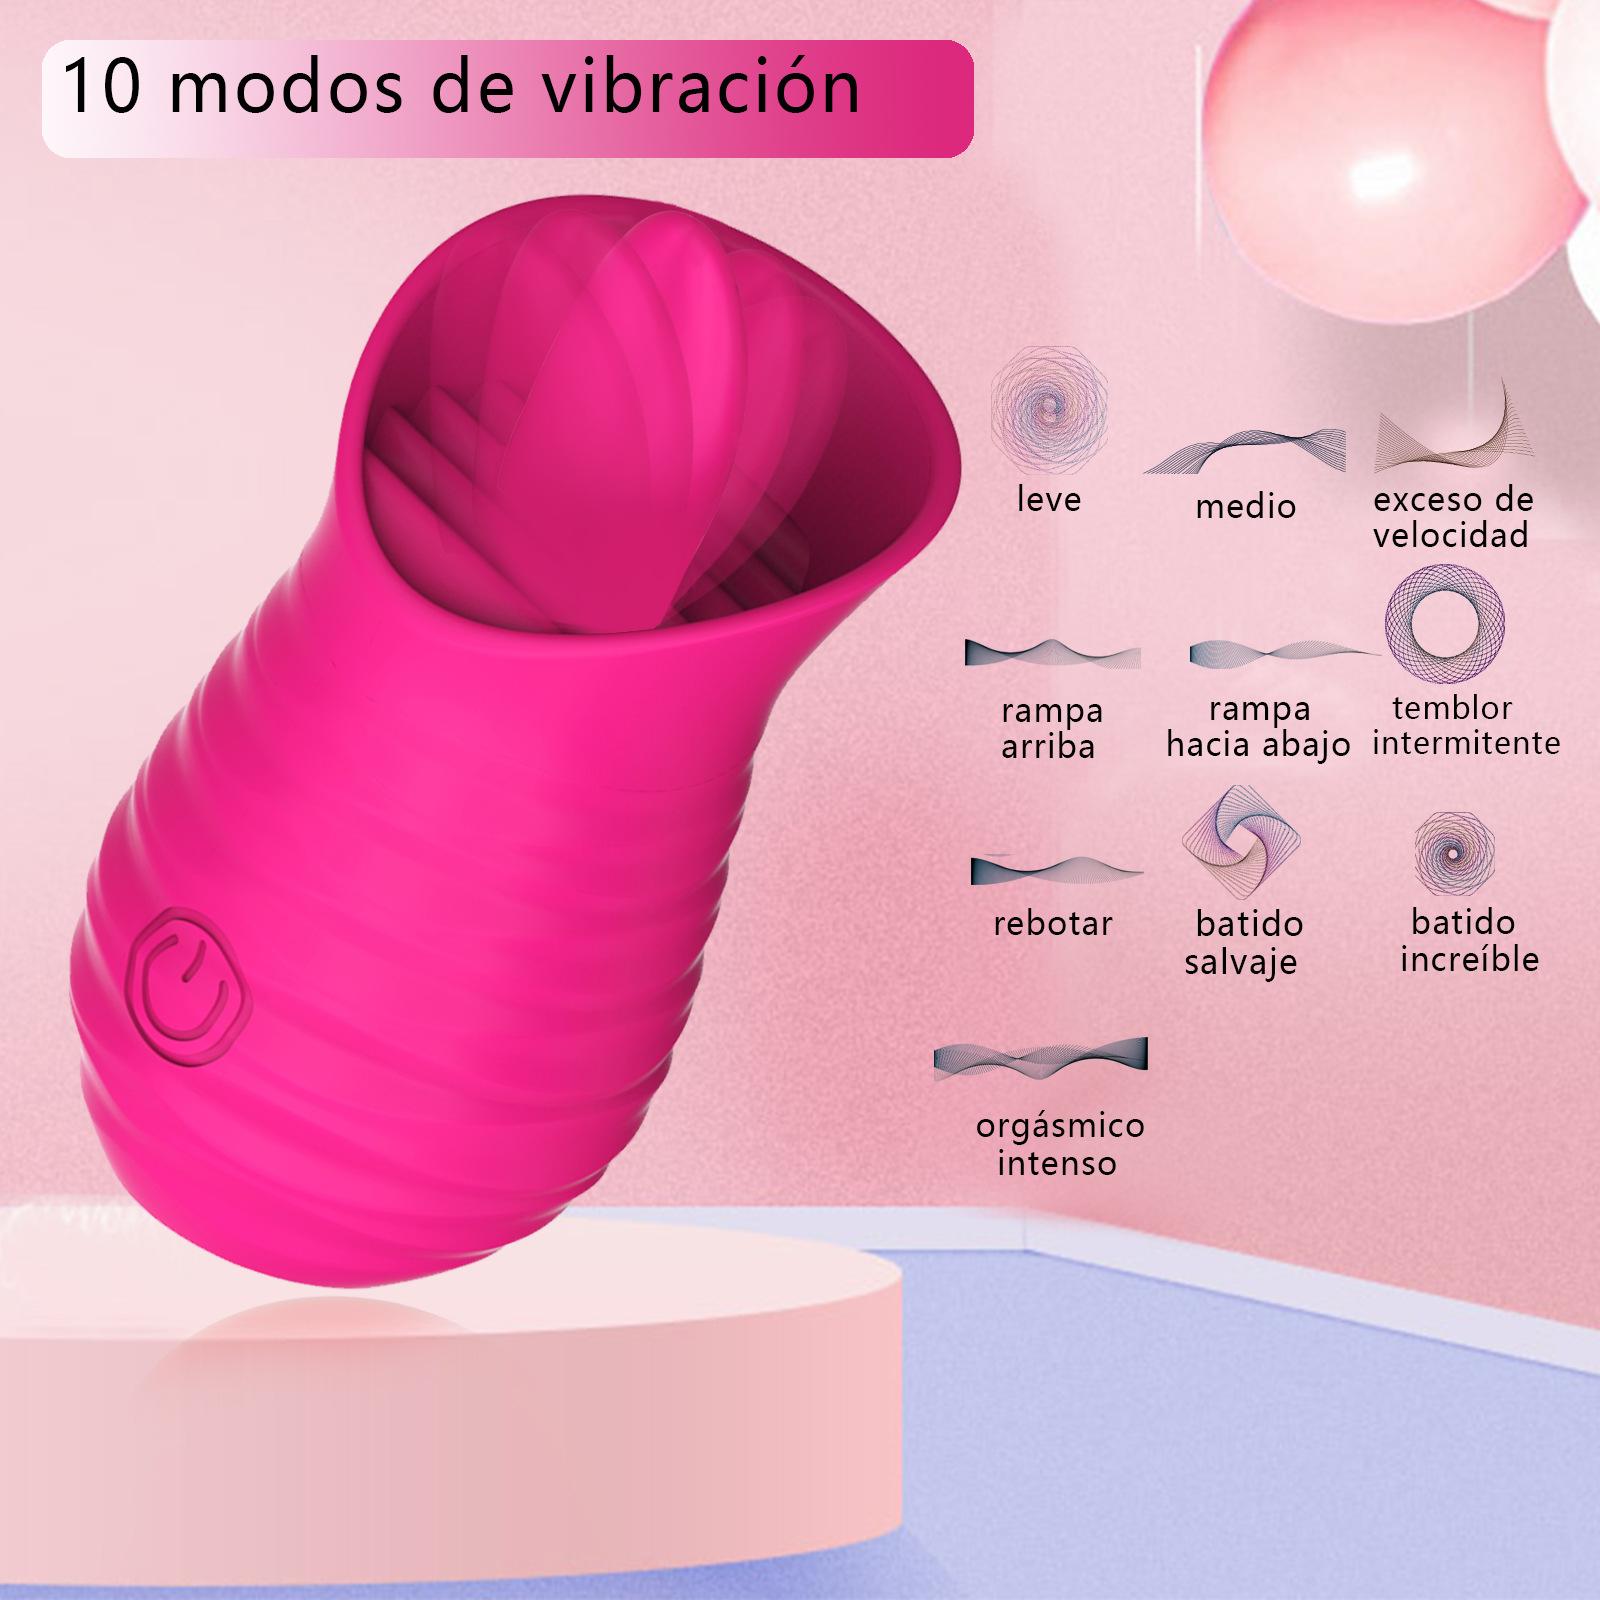 Tongue licking vibrator stimulates clitoral USB charging